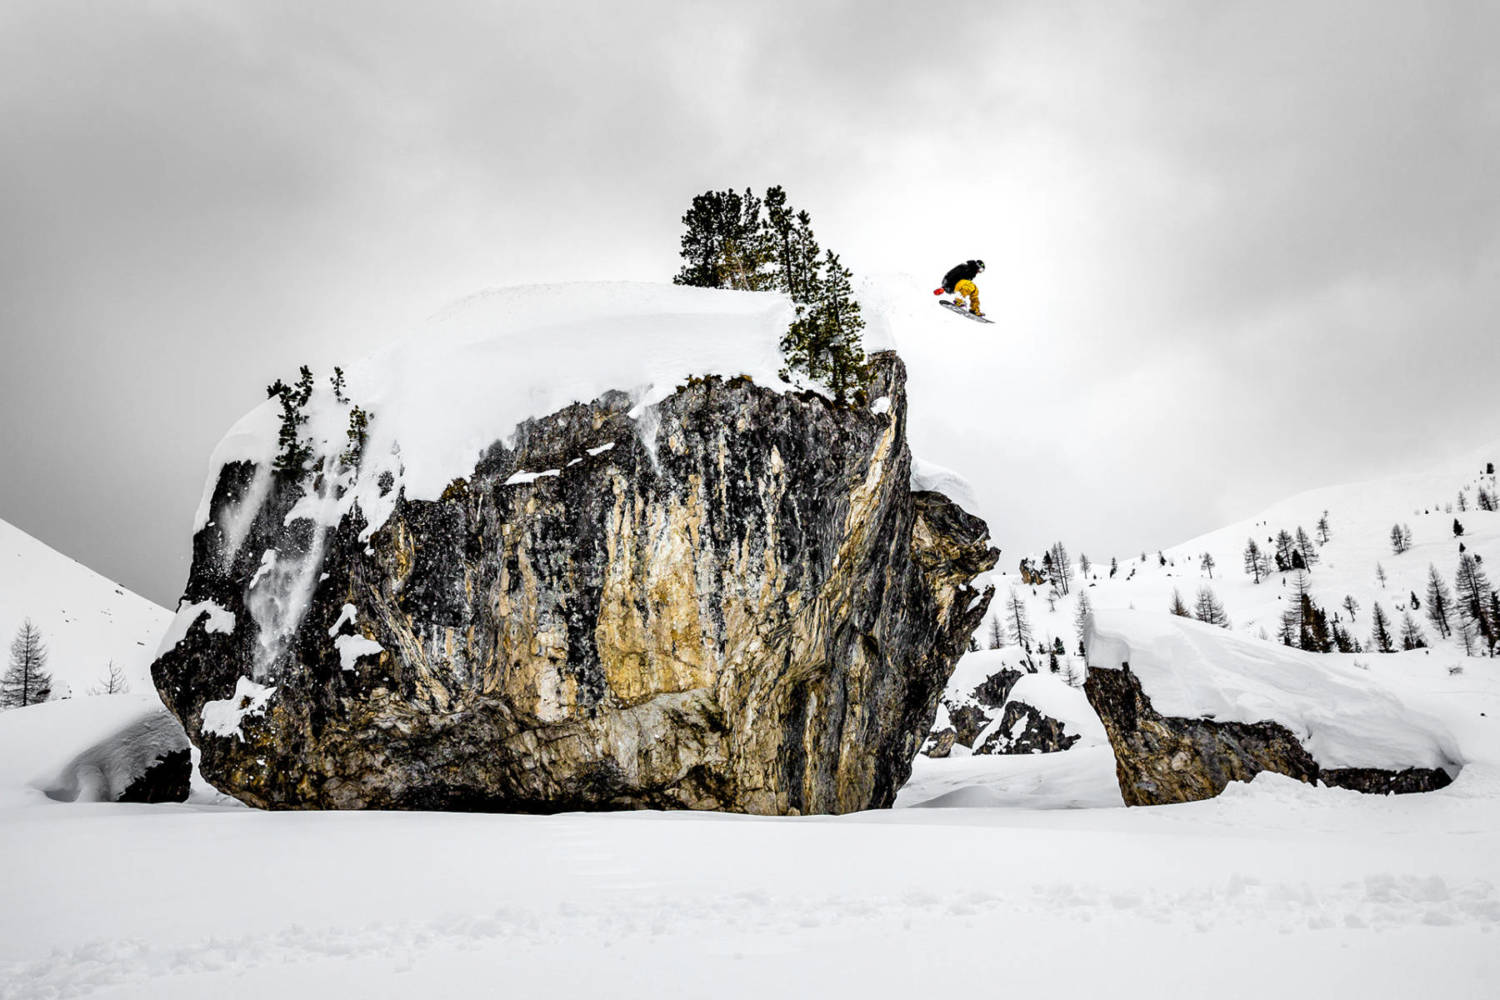 Roberto Bragotto - Fotografo Action Sports / Winter